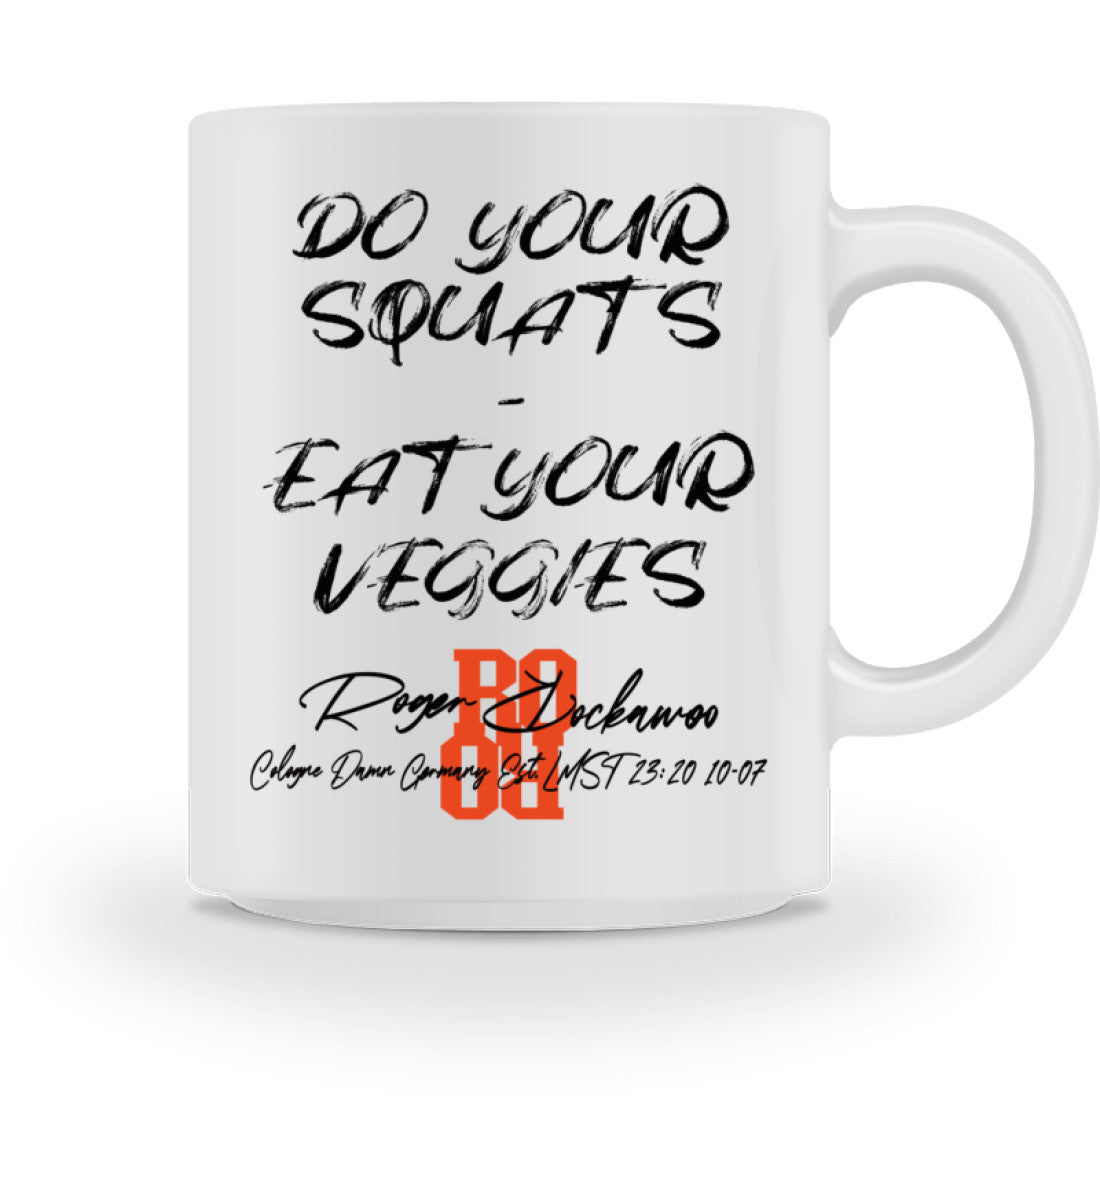 Weiße Tasse bedruckt mit dem Design der Do your Squats eat your Veggies Kollektion von Roger Rockawoo